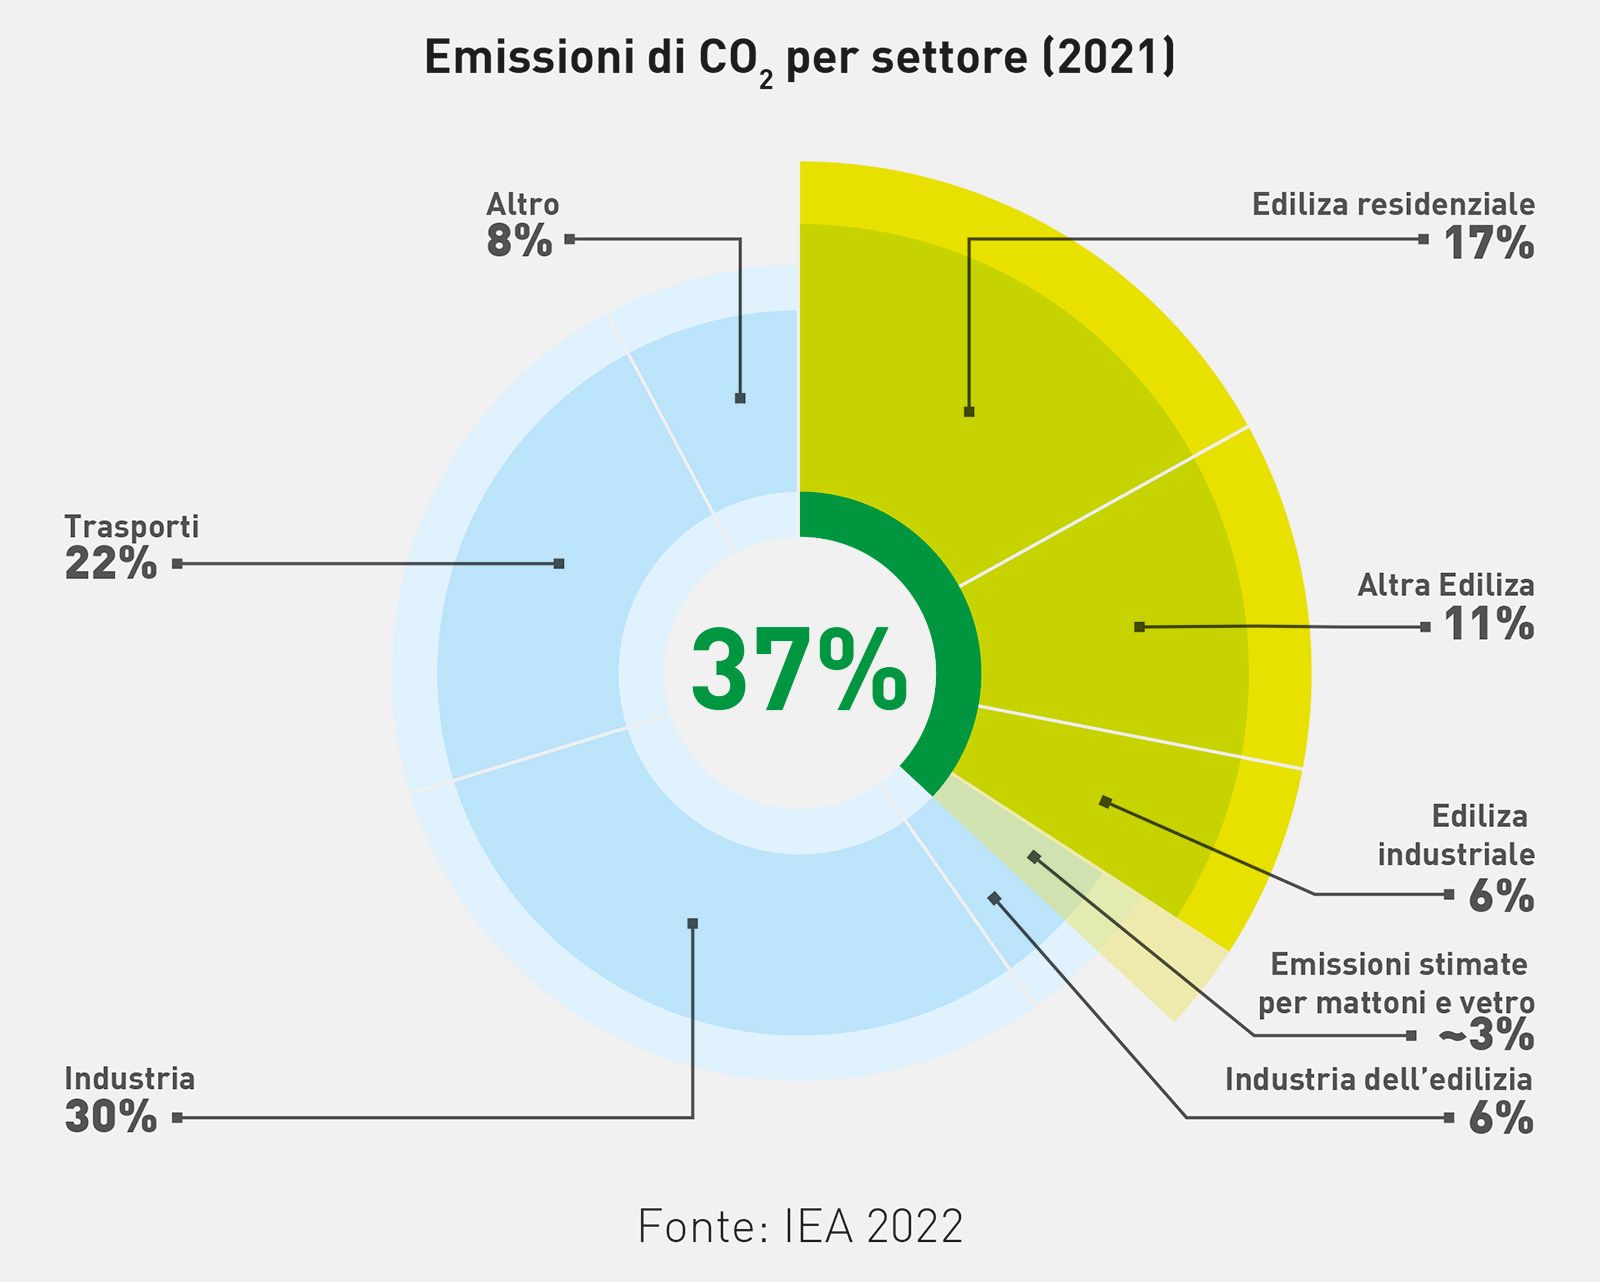 Emissioni di CO2 per settore (dati IEA 2022)